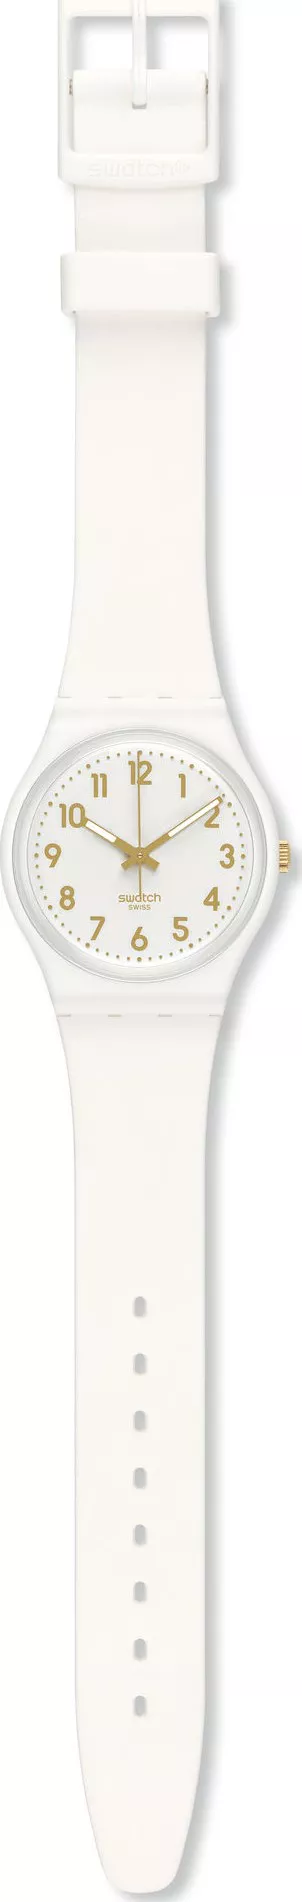  Swatch Bishop Analog Silicone Unisex Watch 33mm